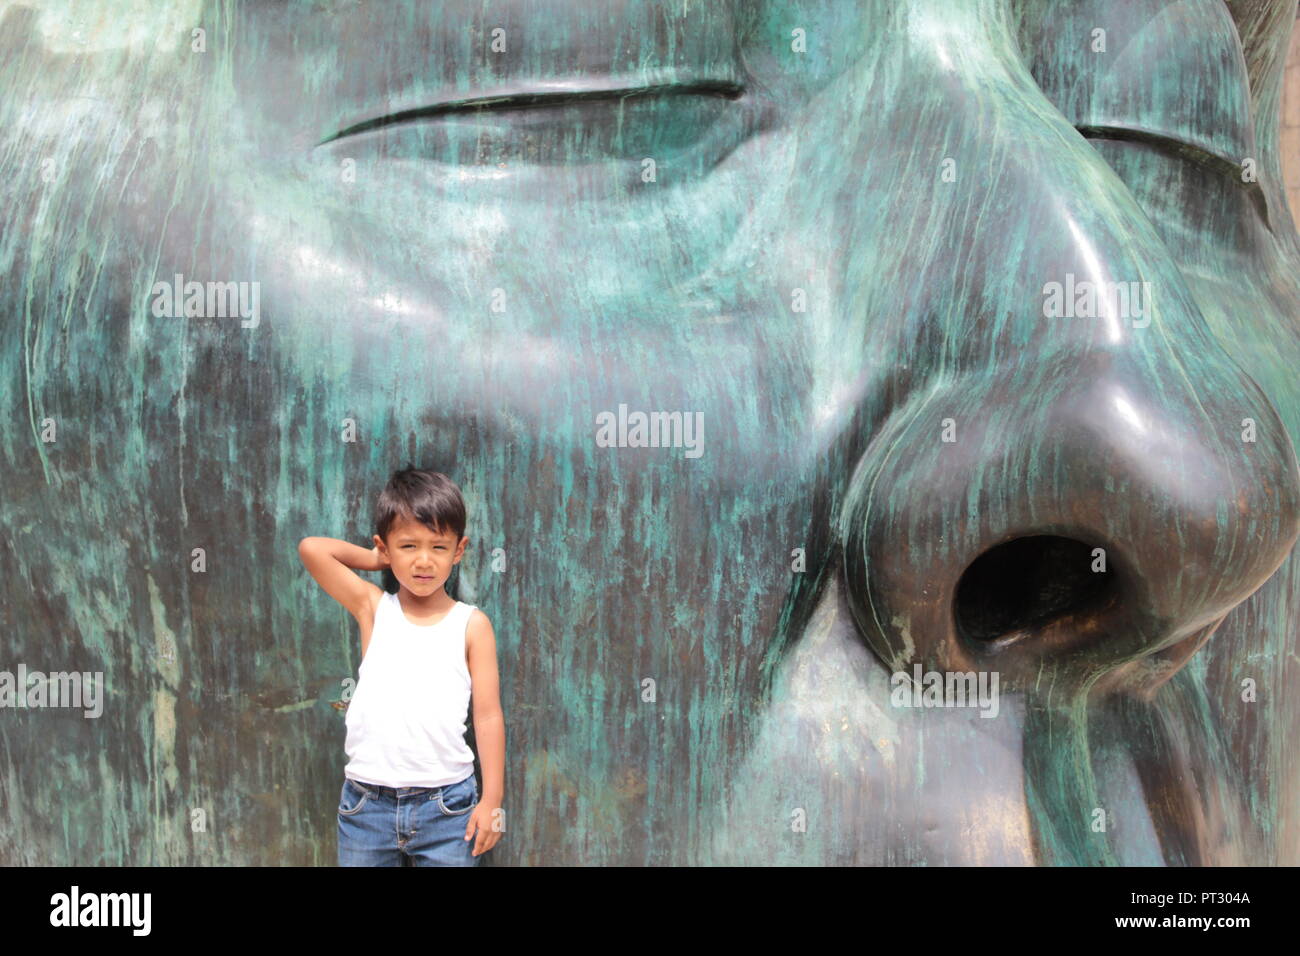 niño posando para la foto con una mano tocándose la cabeza recargado en una escultura verde de una cabeza a gran escala a plana luz del dia Stock Photo